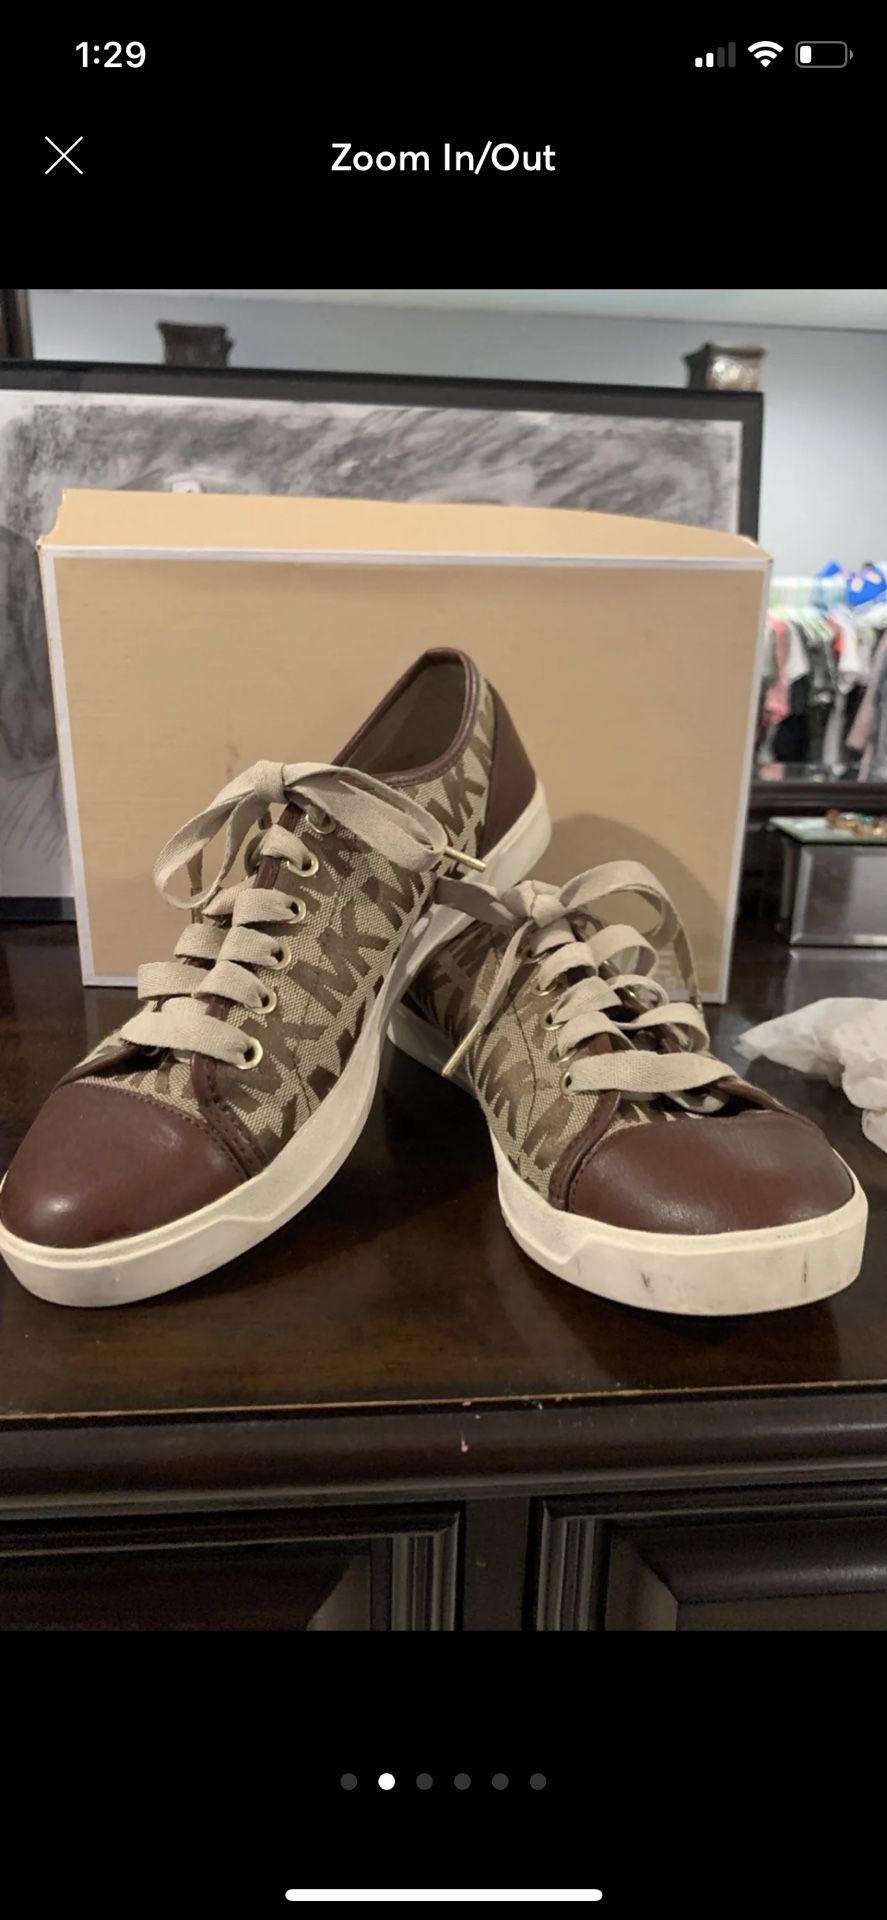 Michael Kors Tennis Shoes Size 9